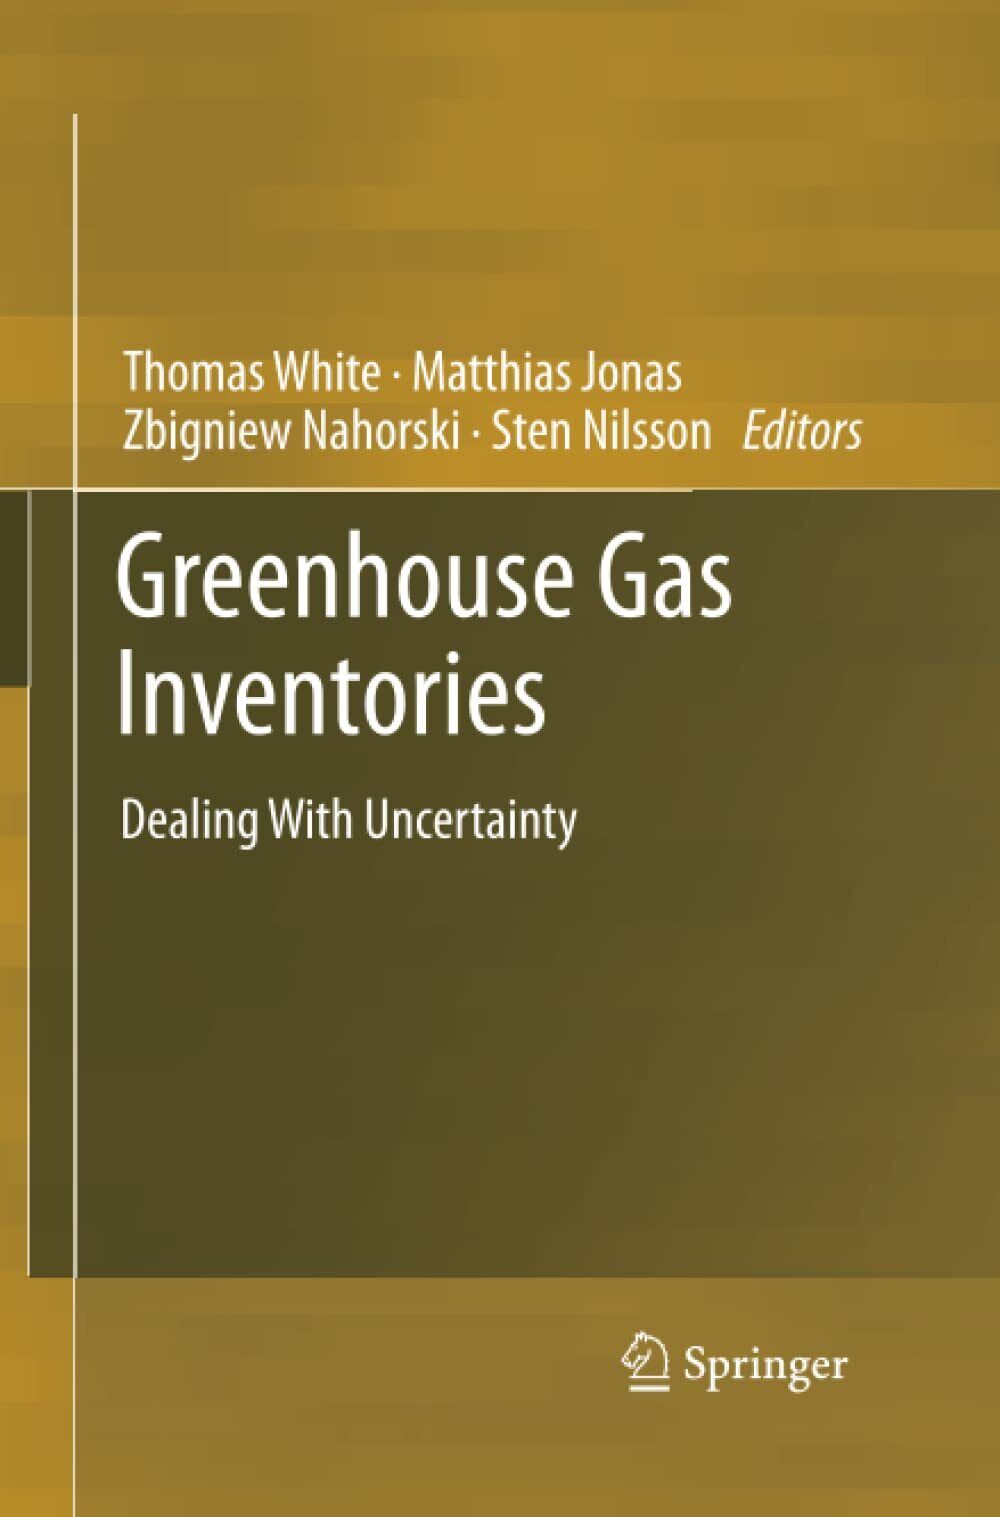 Greenhouse Gas Inventories - Thomas White - Springer, 2014